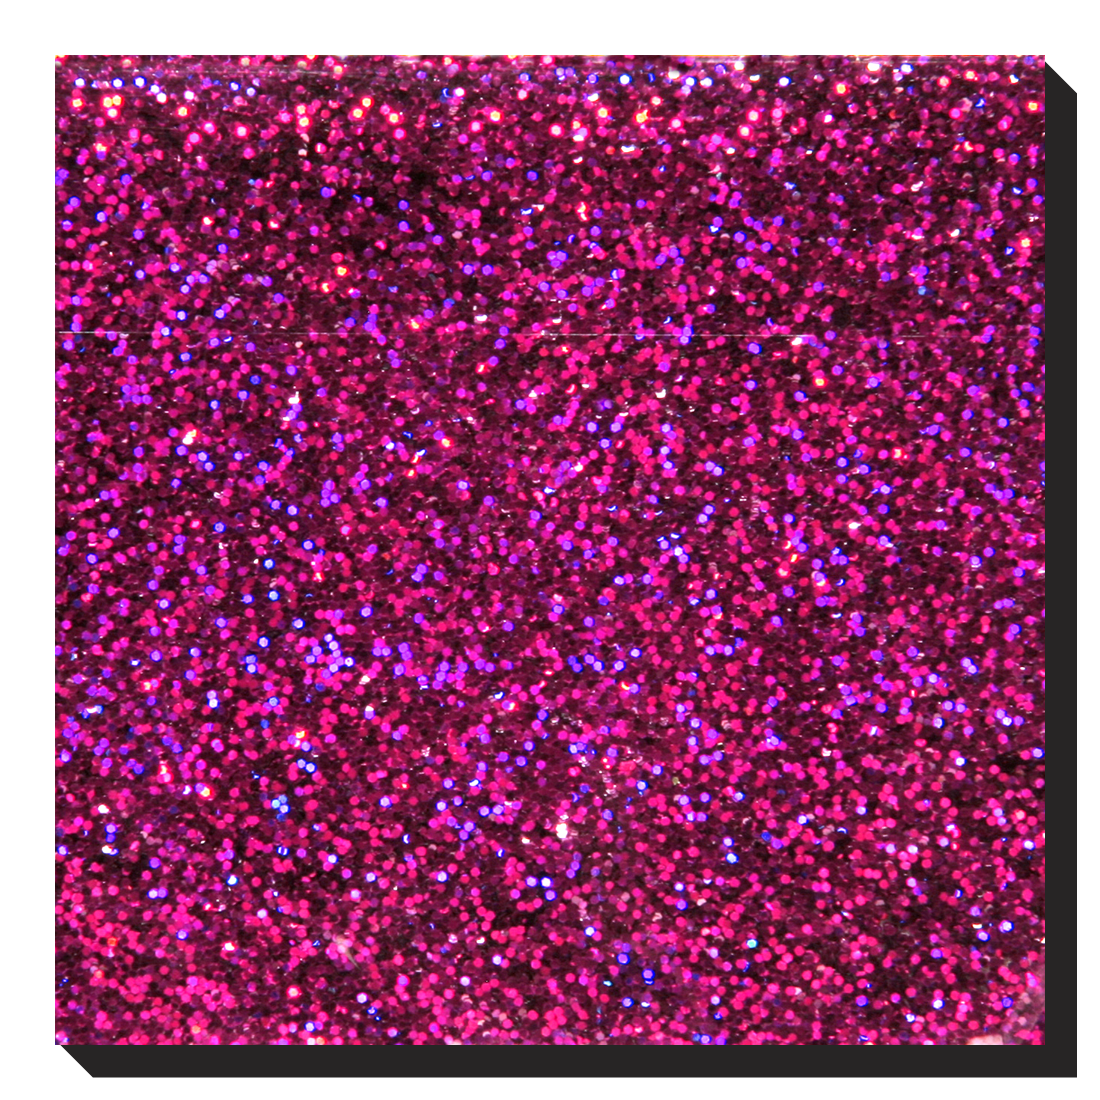 LB912-Hologram D. Pink Holographic / Laser